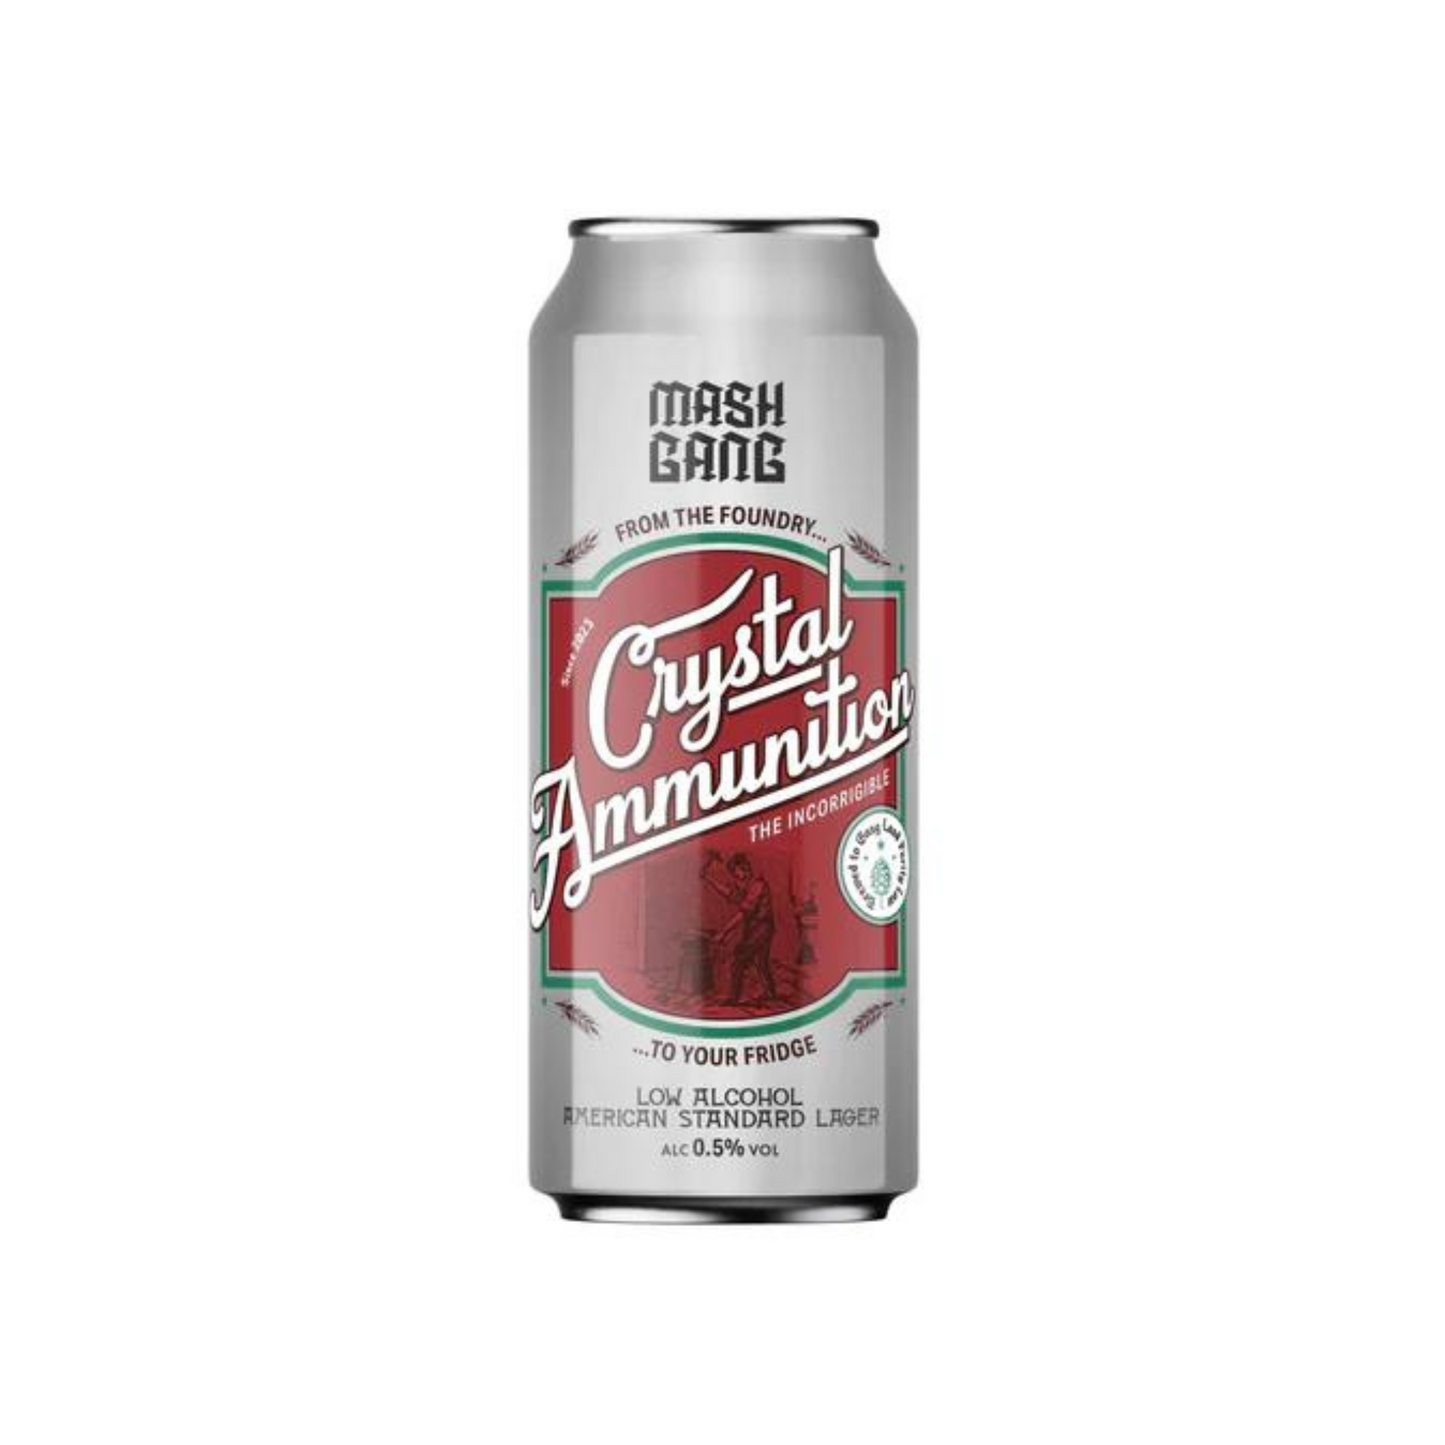 Mash Gang Crystal Ammunition Low Alcohol Lager Beer